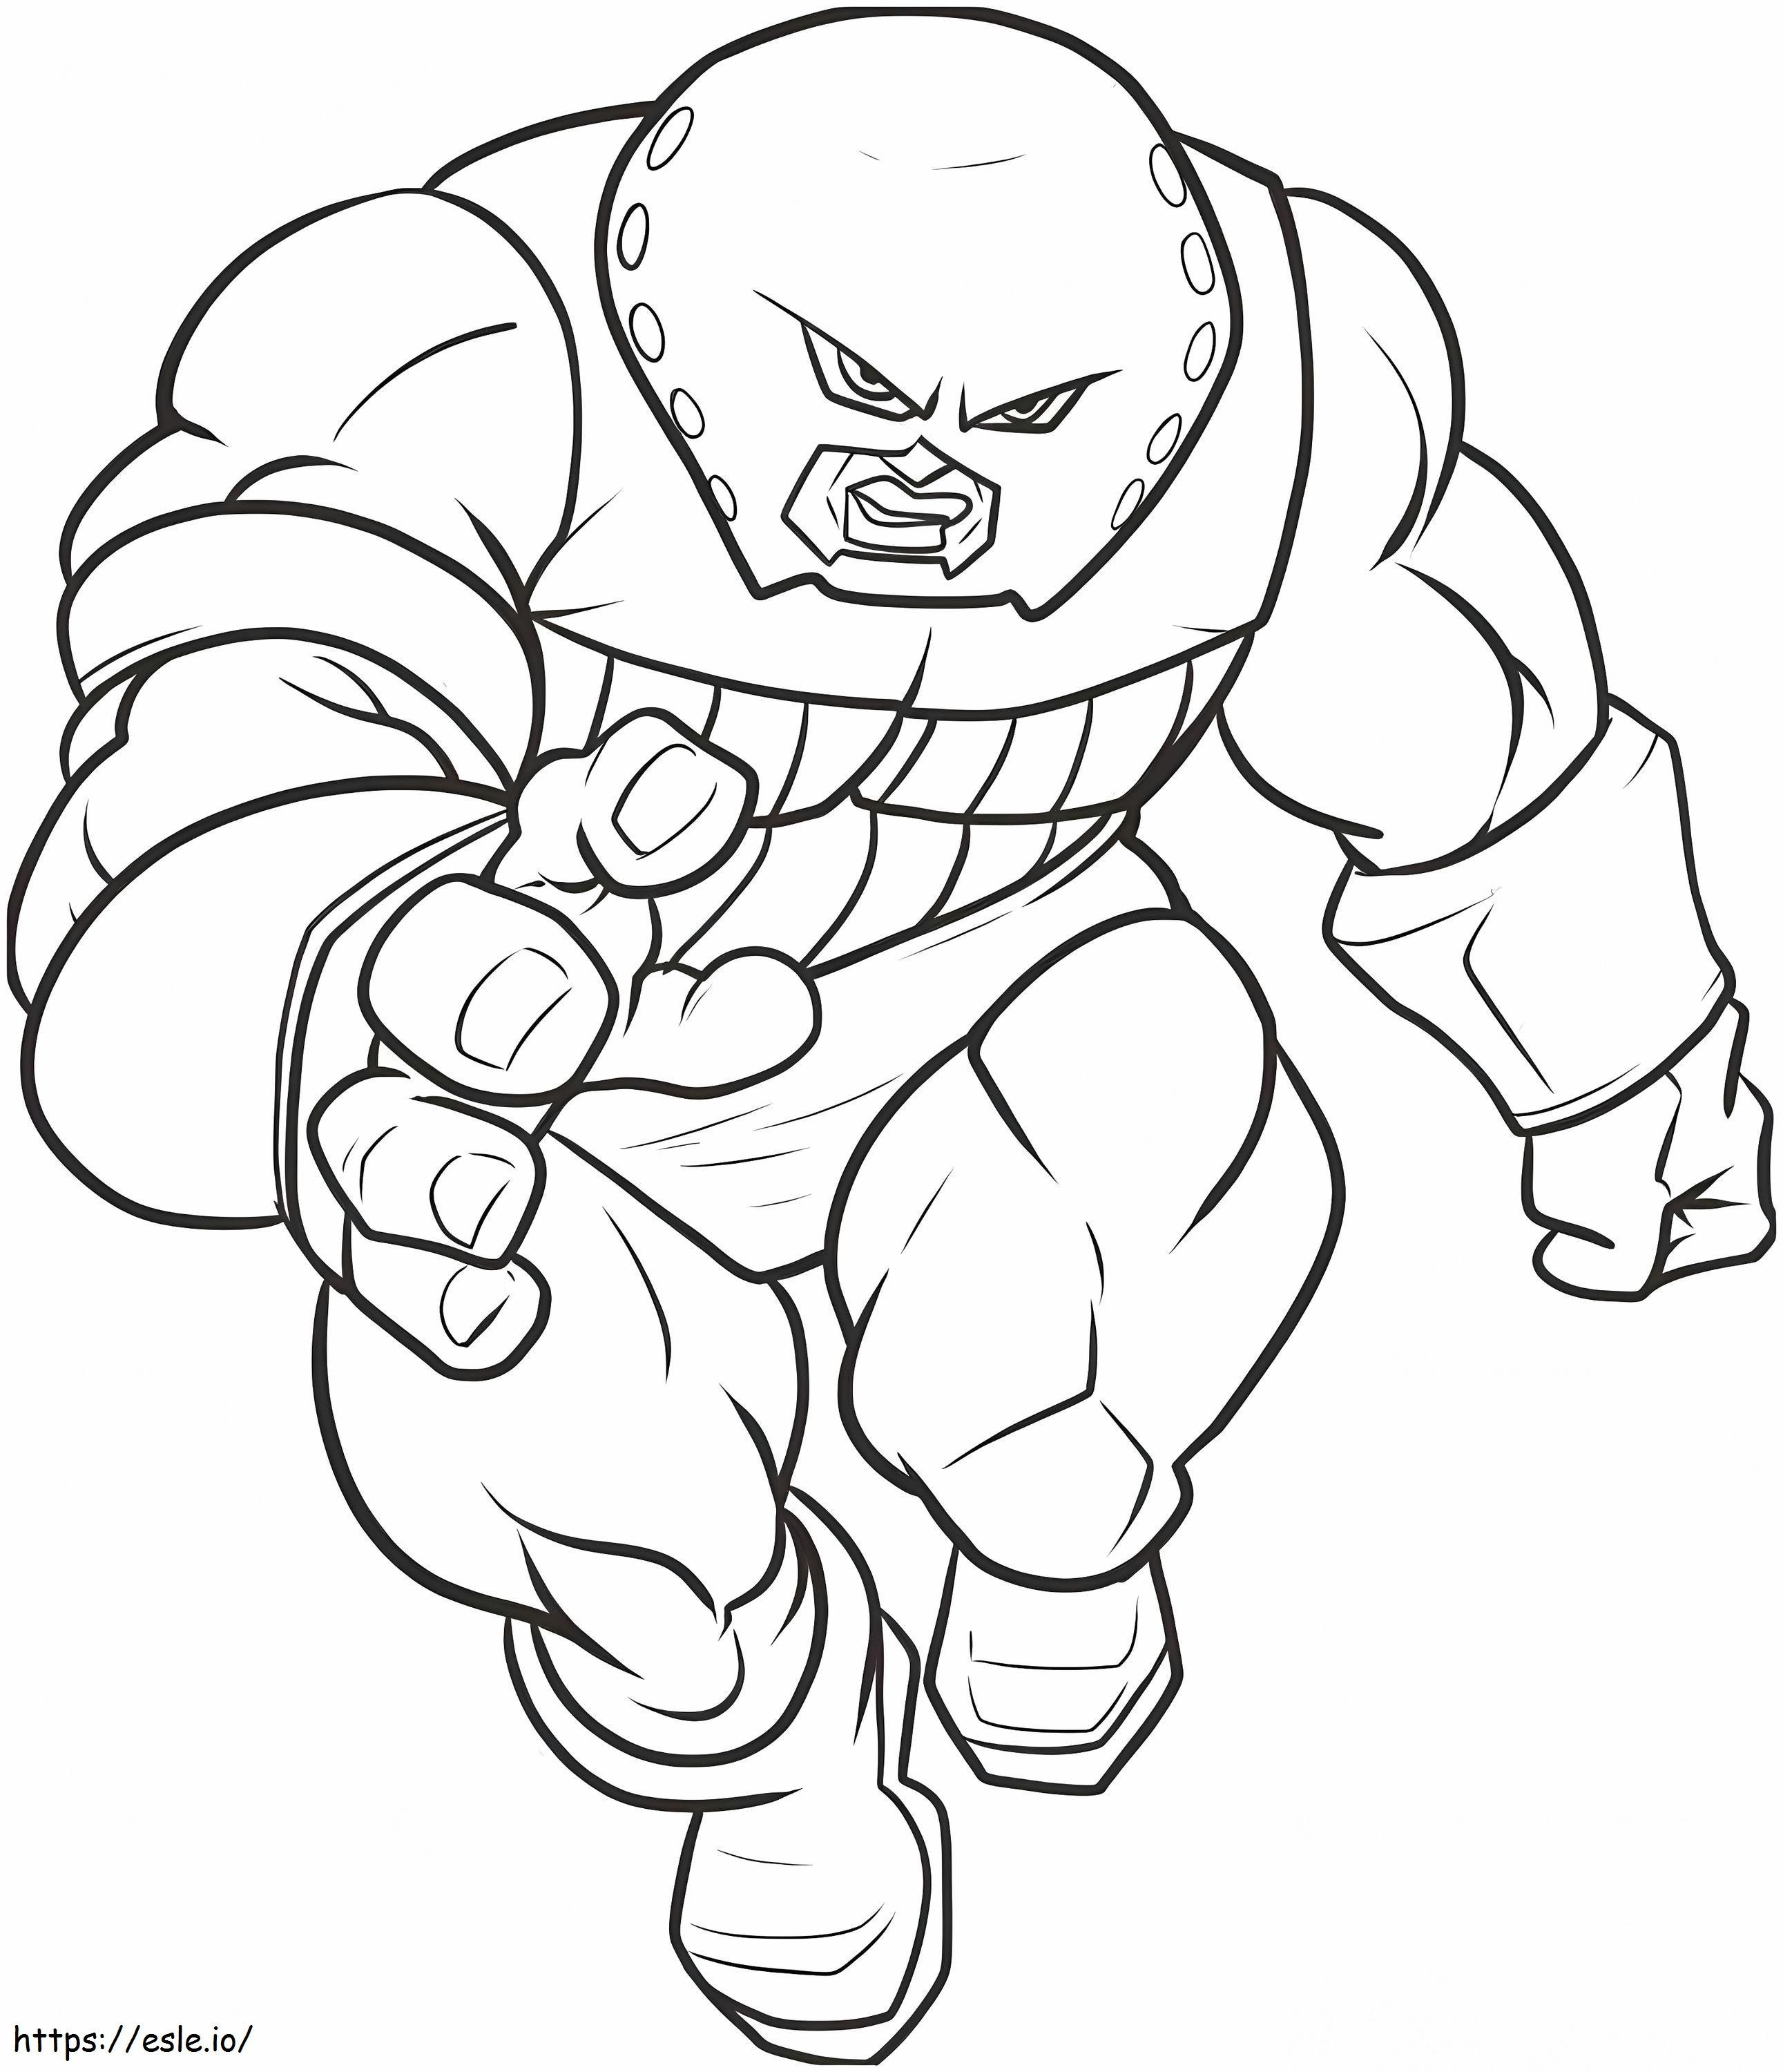 1544839187 Çizim Boyama Kitabı Şaşırtıcı Juggernaut Nasıl Çizilir Adım Adım Marvel Karakterleri Çizim Boyama Kitabı boyama